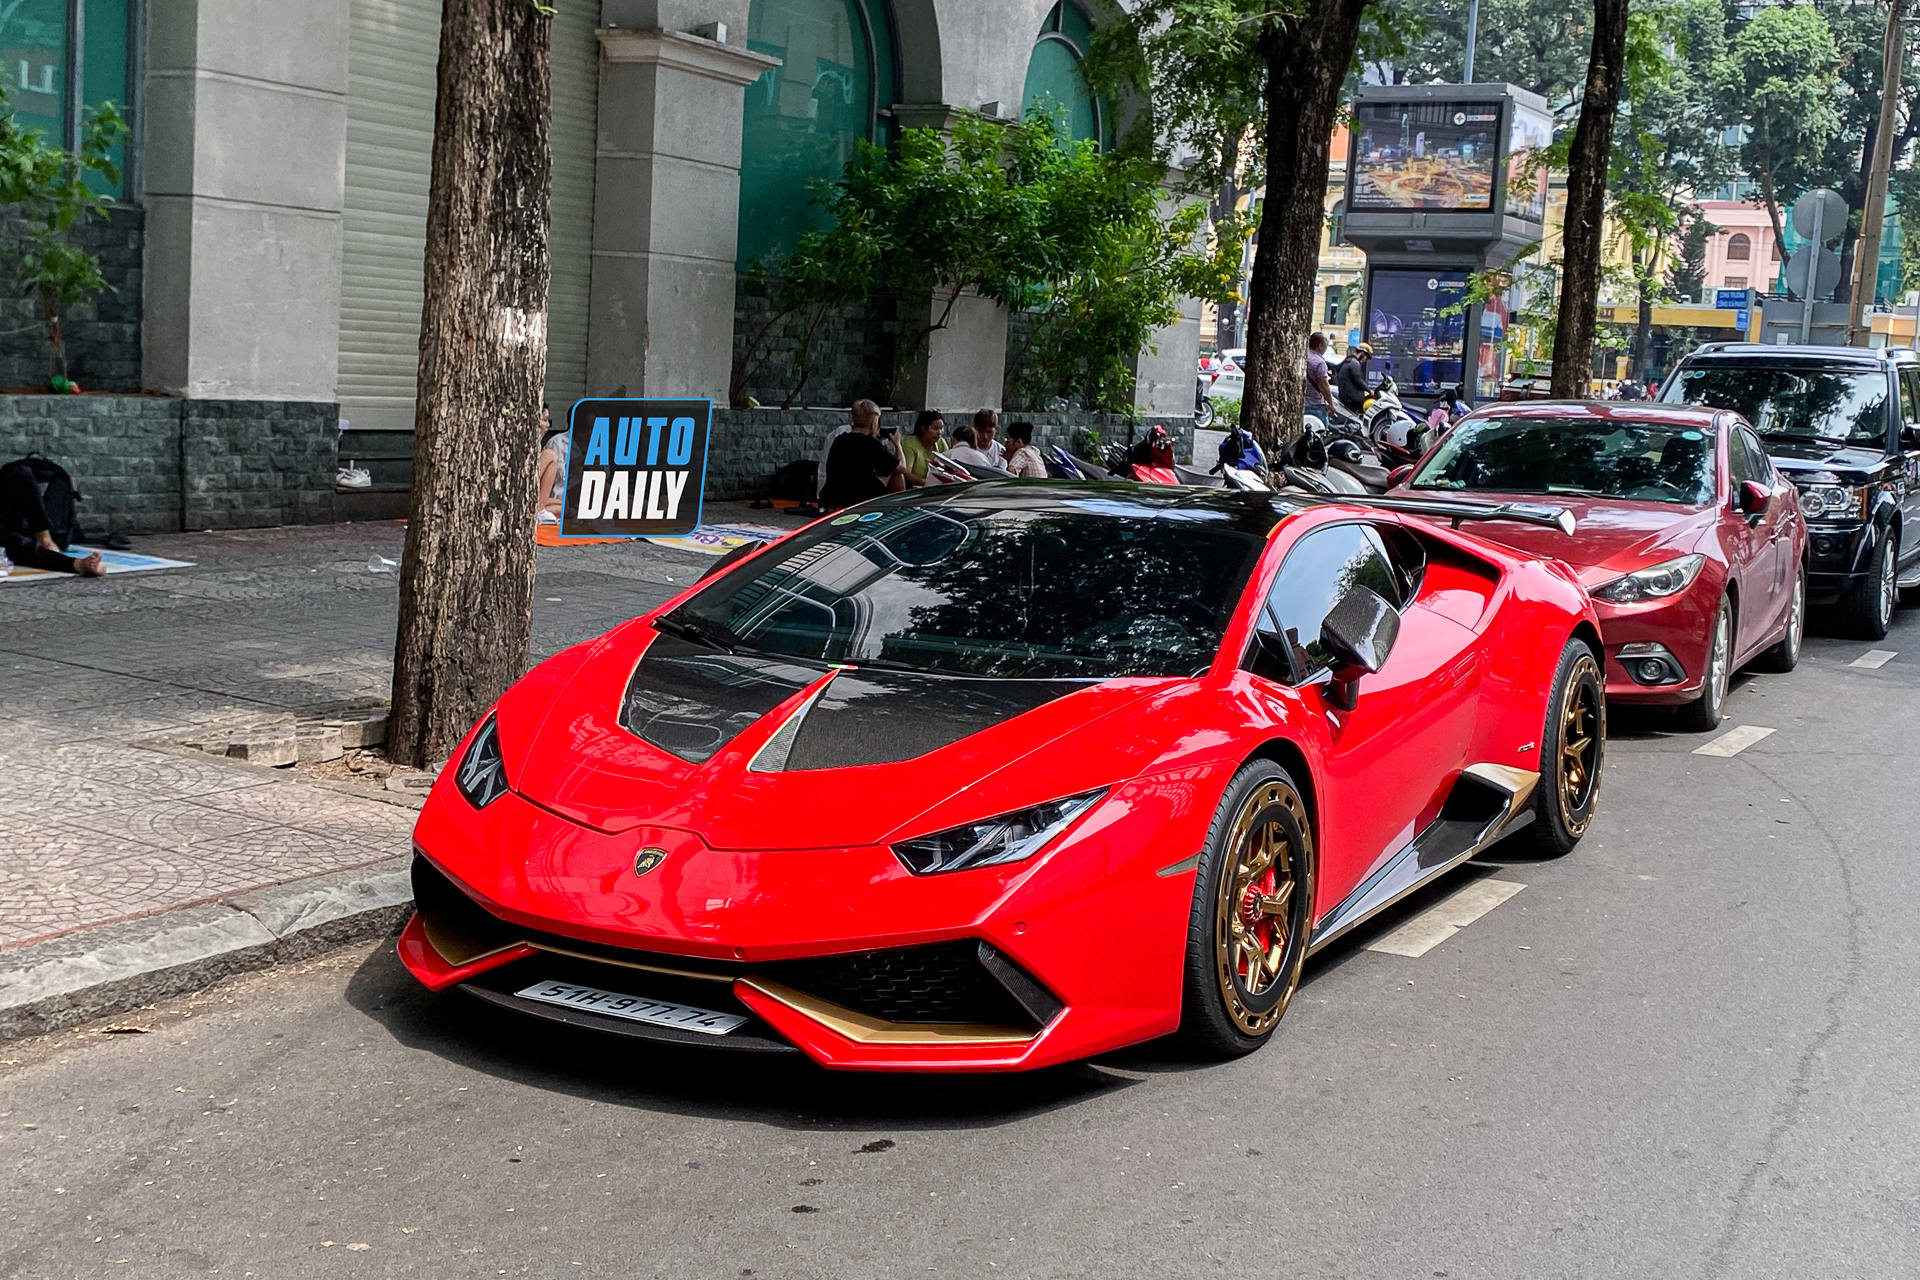 Bắt gặp Lamborghini Huracan độ khủng của đại gia Sài Gòn, bộ mâm hàng thửa giá hàng trăm triệu lamborghini-huracan-do-bo-mam-tram-trieu-autodaily-4.JPG